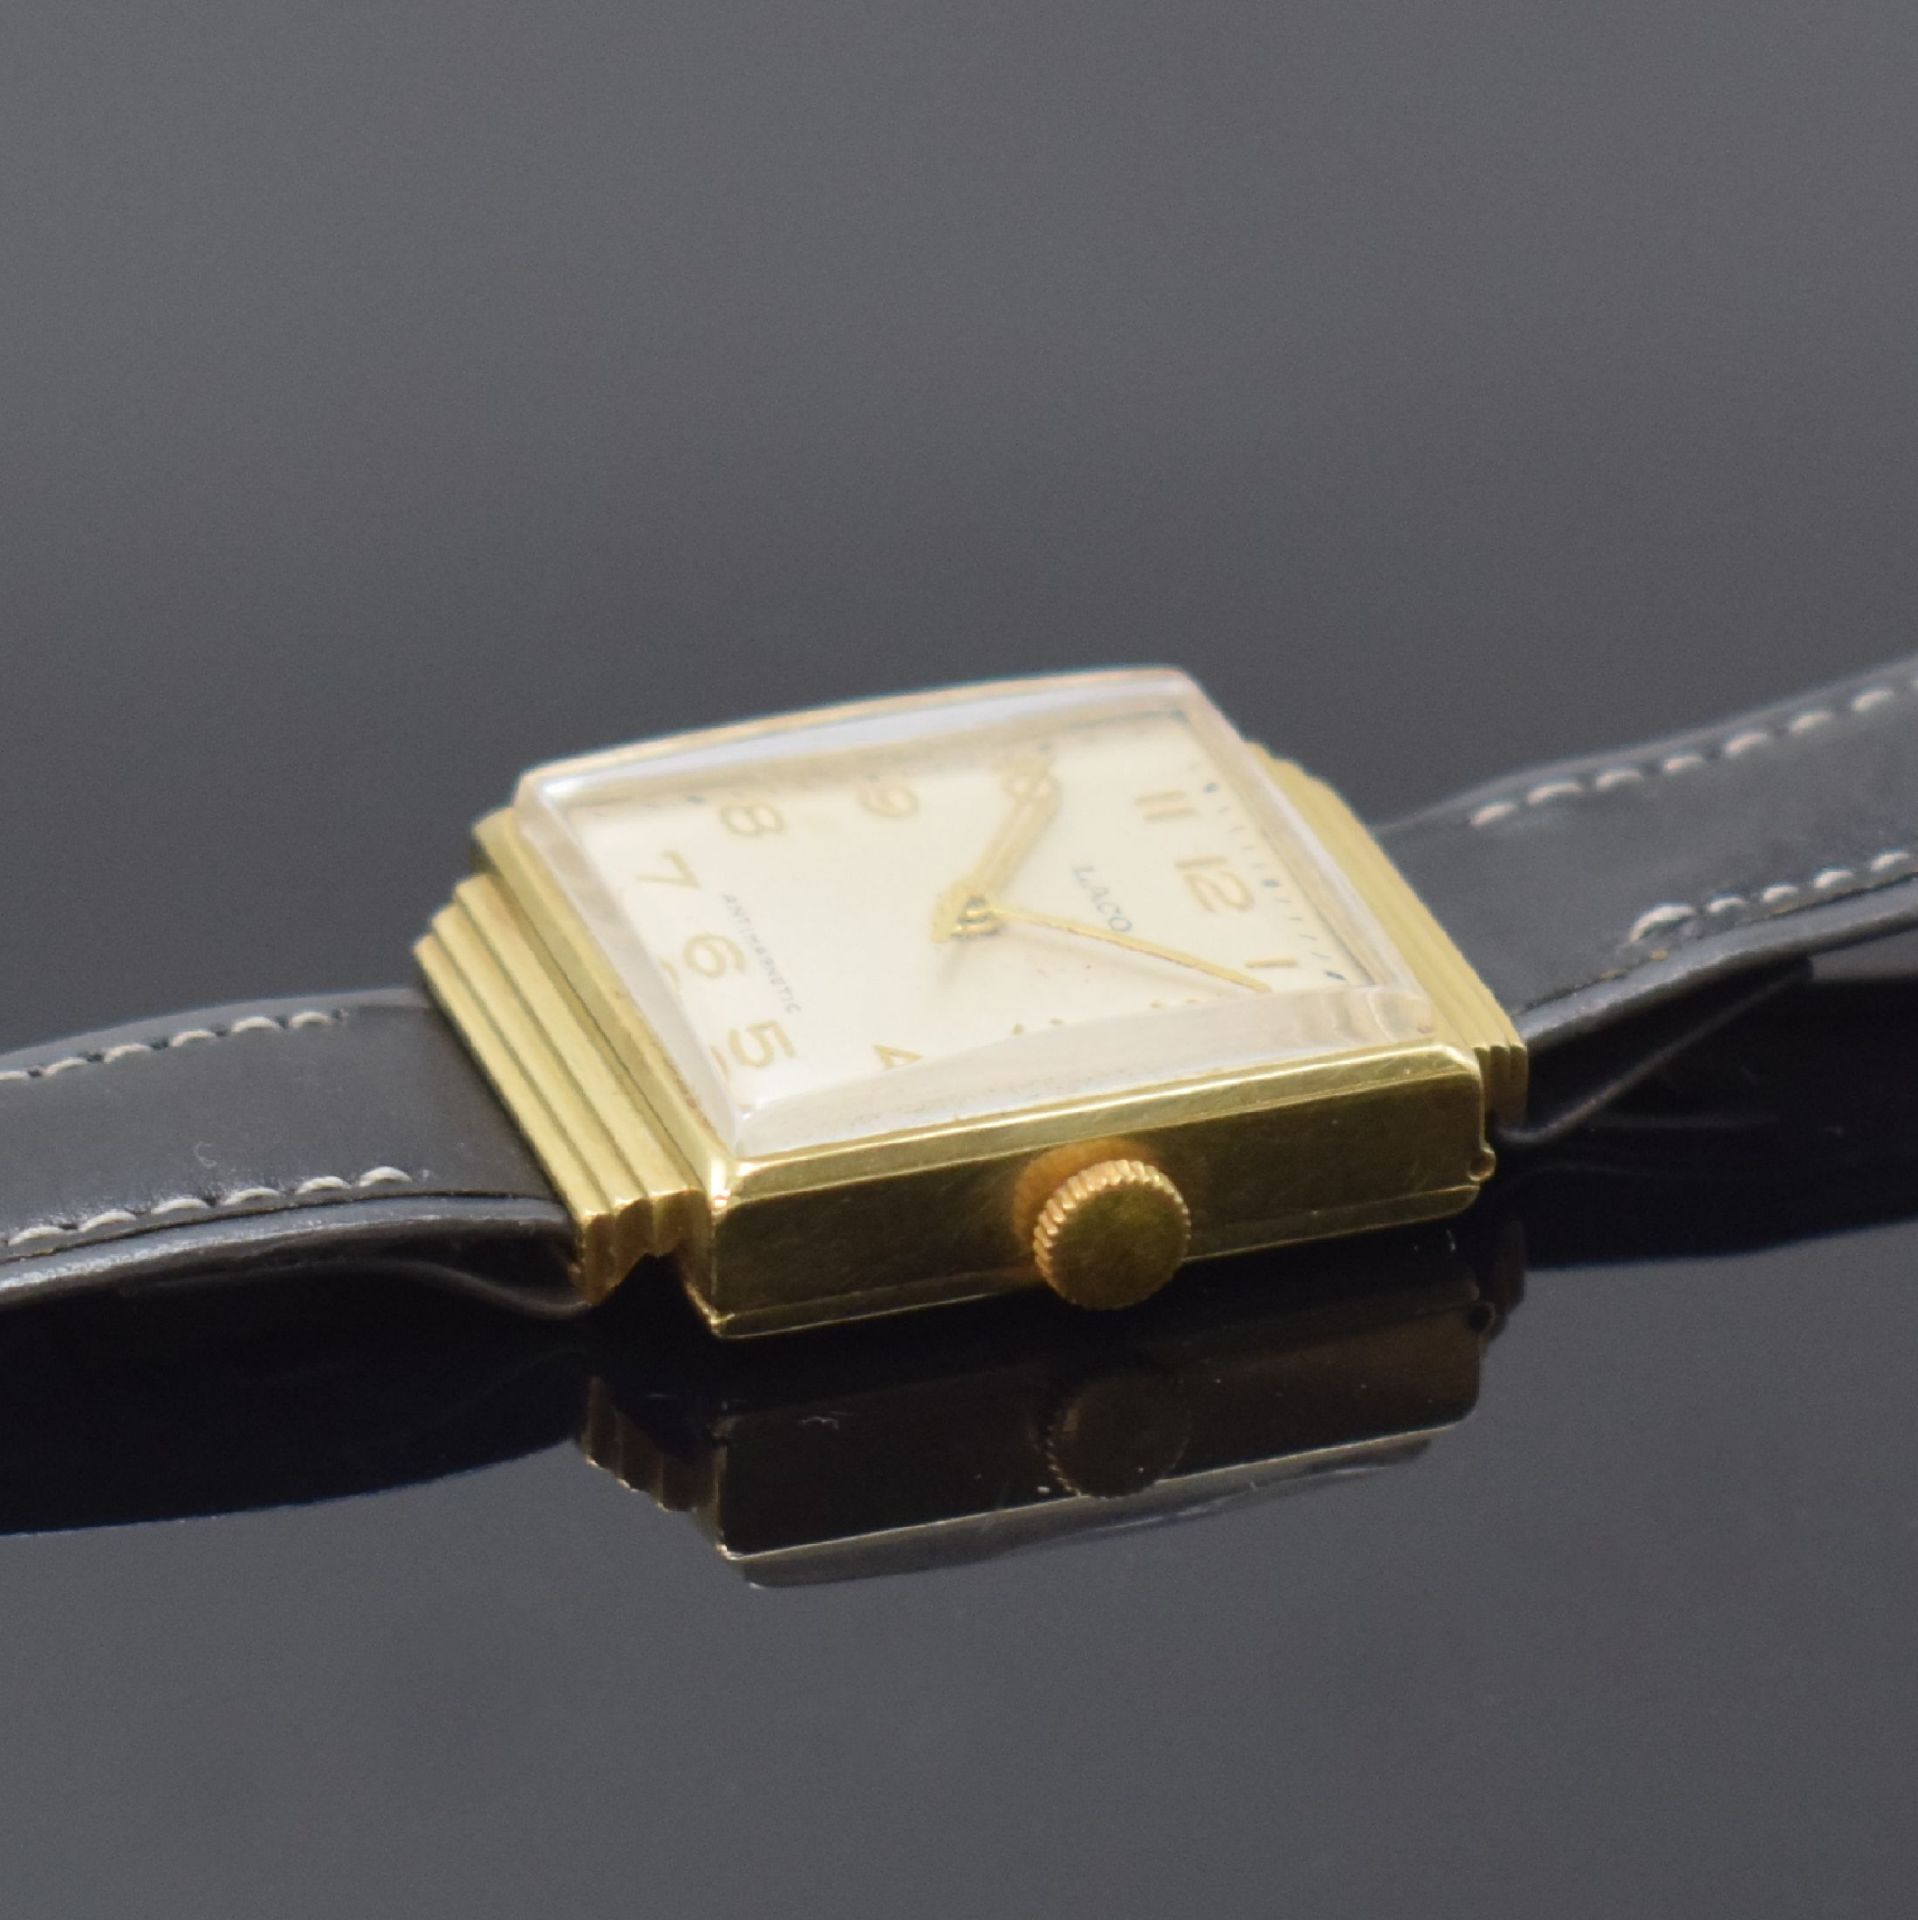 LACO viereckige Armbanduhr in GG 585/000, Deutschland - Image 3 of 4